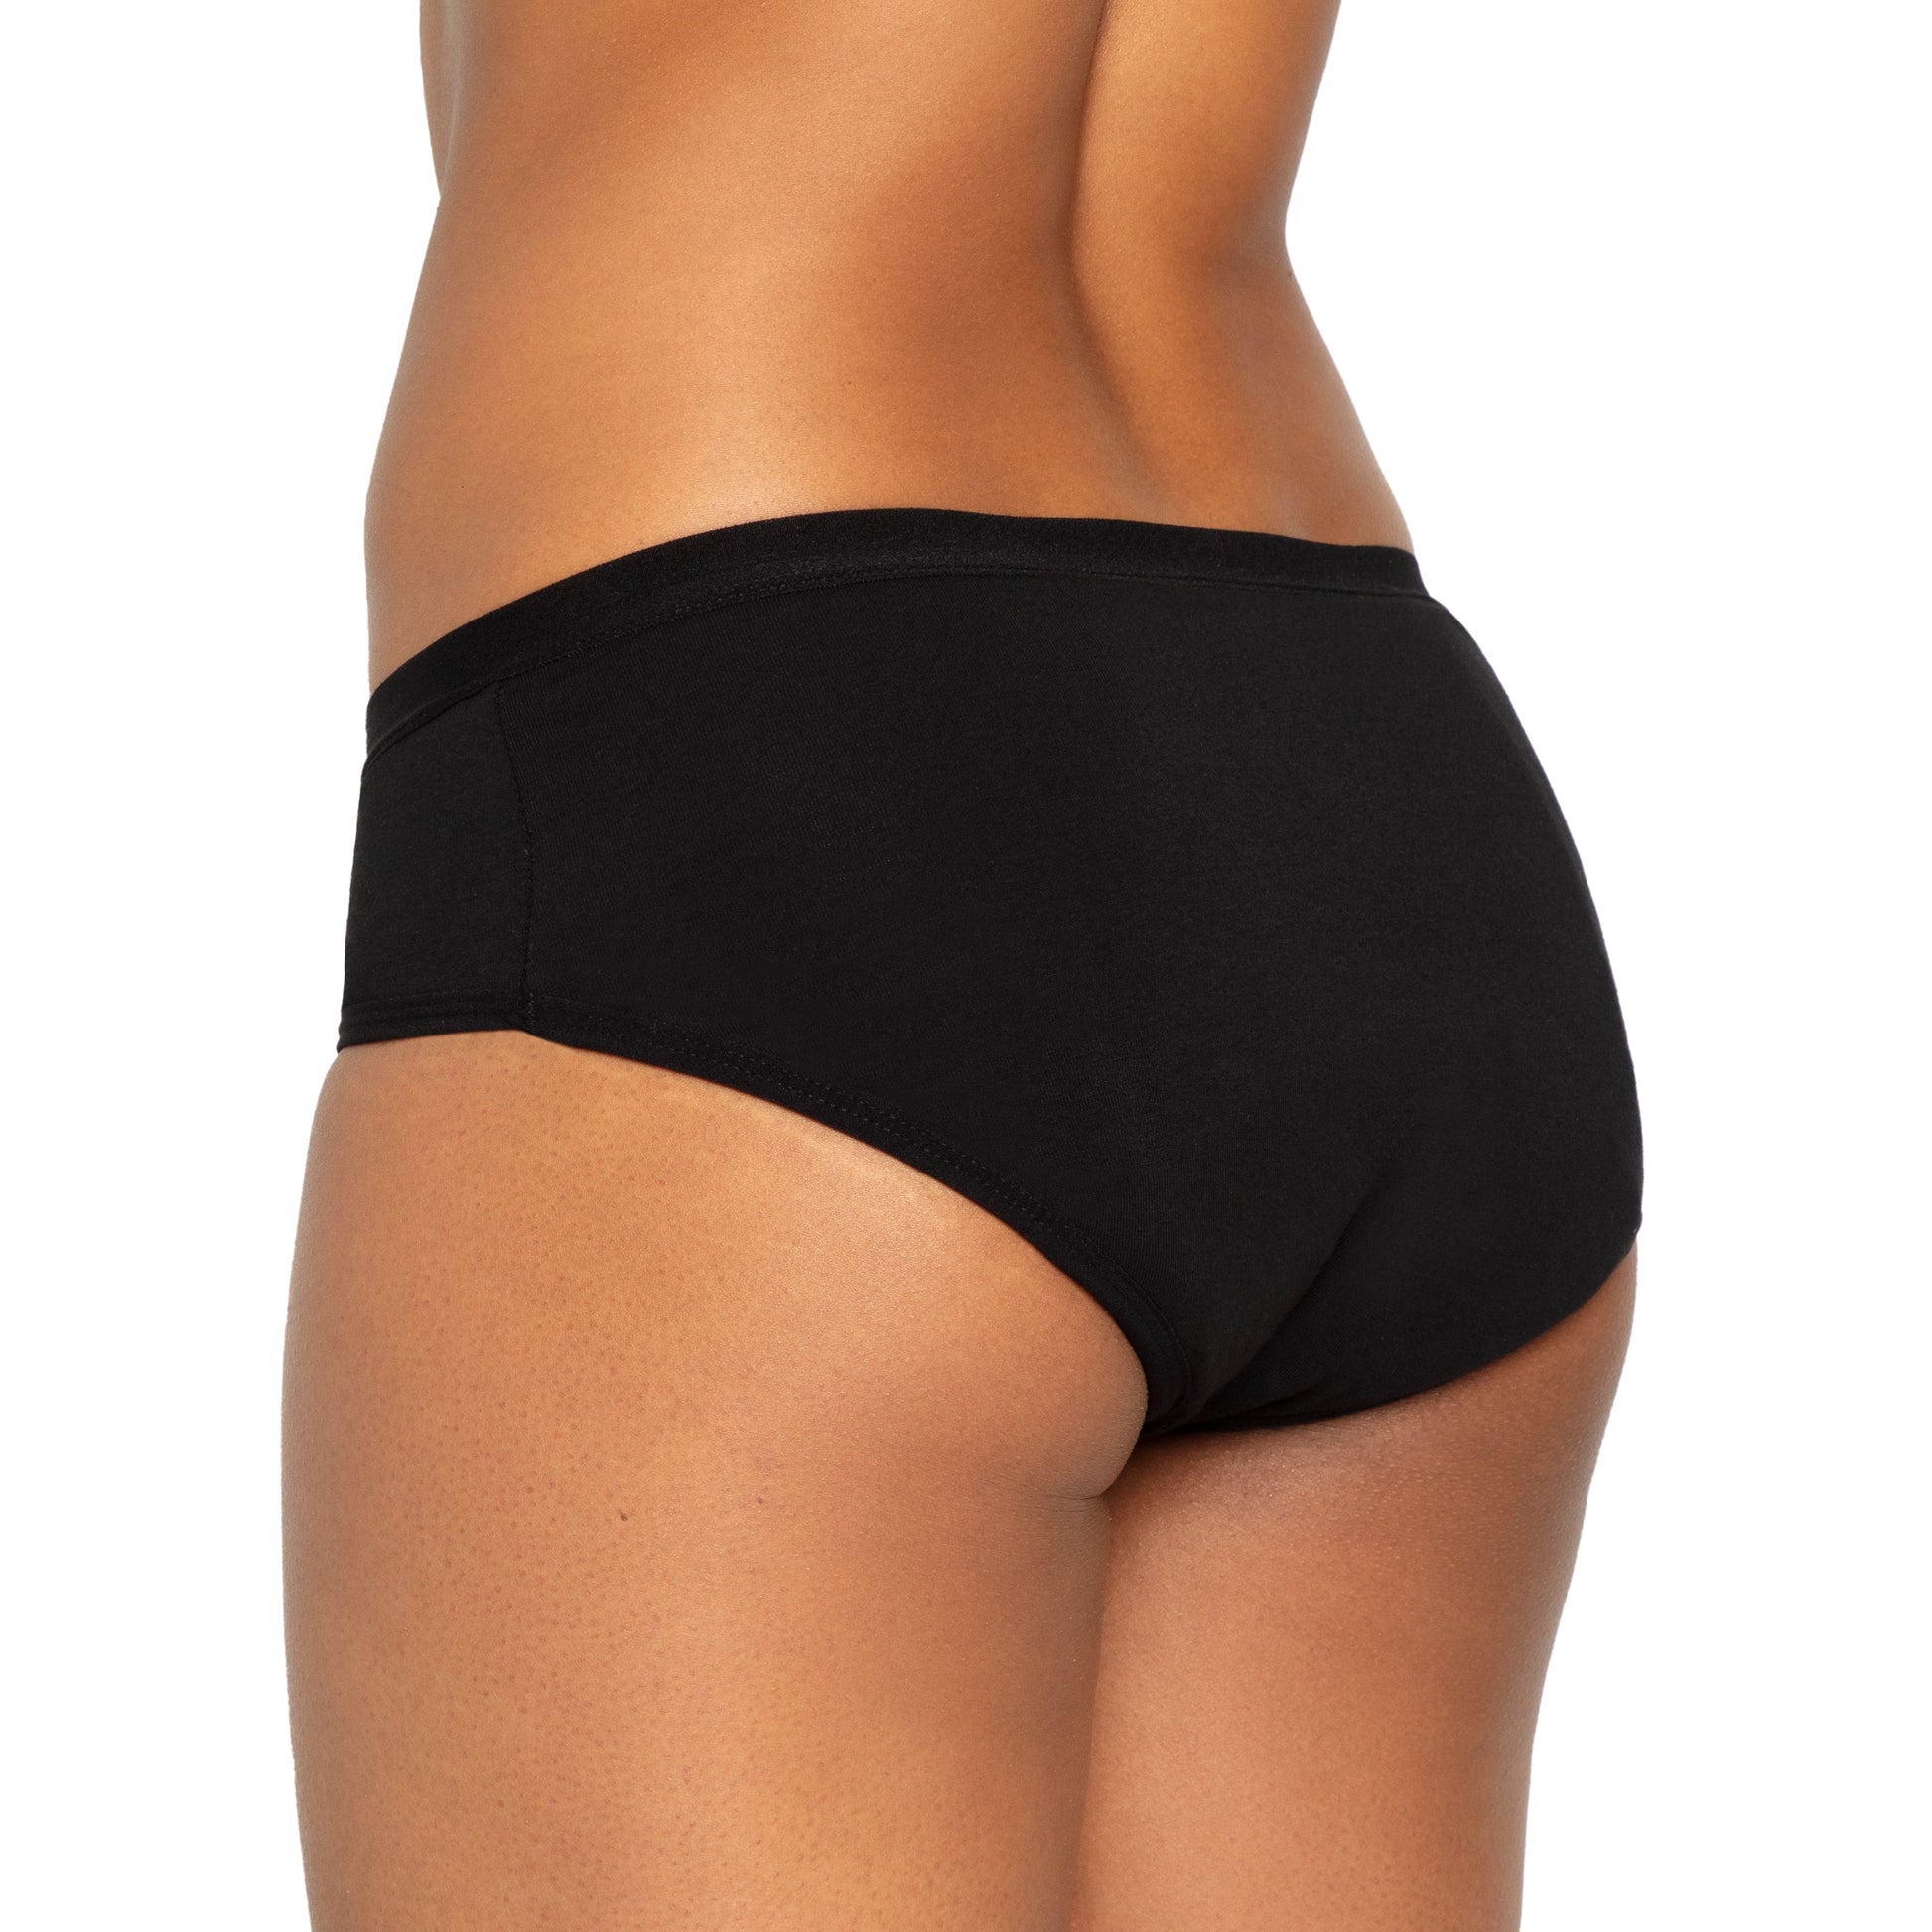 FSA-approved The Bikini Period. in Sporty Stretch For Heavy Flows, XS - 2X  – BuyFSA